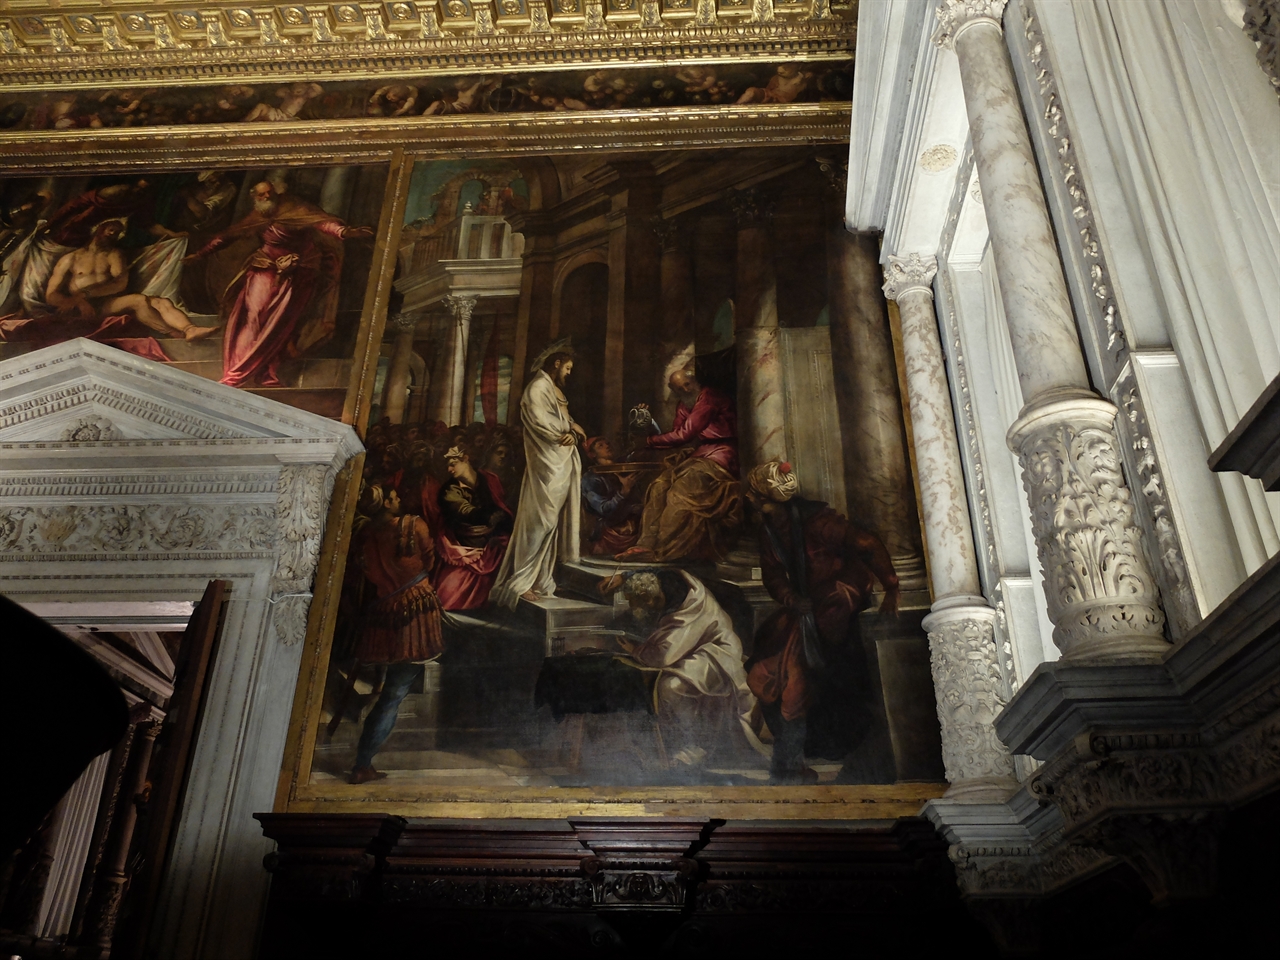 틴토레토, <빌라도 앞에 선 예수>. 베네치아 산 로코 대신도 회당. 로마 총독 빌라도 앞에서 재판을 받고 있는 예수의 모습이 한없이 고독해 보입니다.